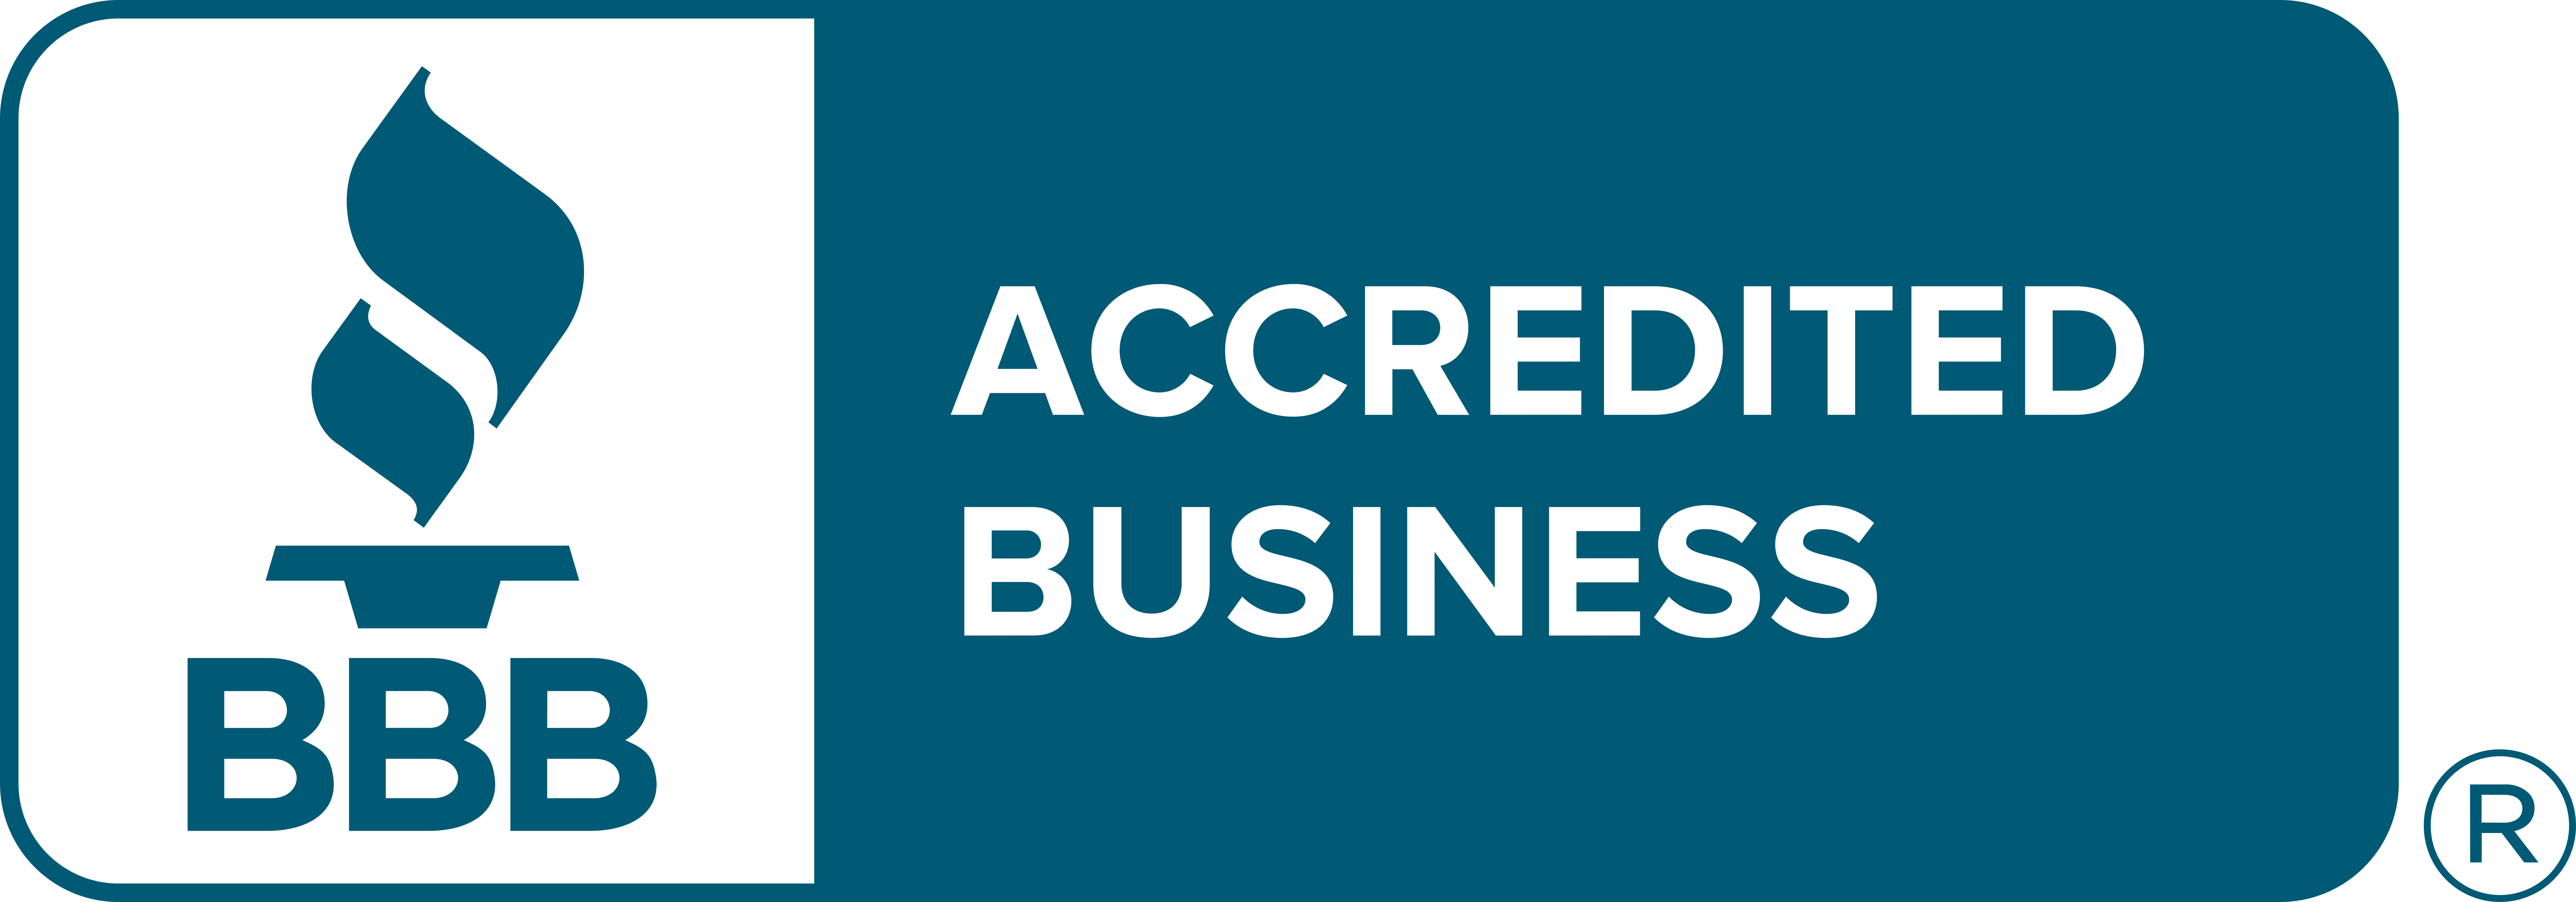 Better Business Bureau (BBB) Accredited Business Logo